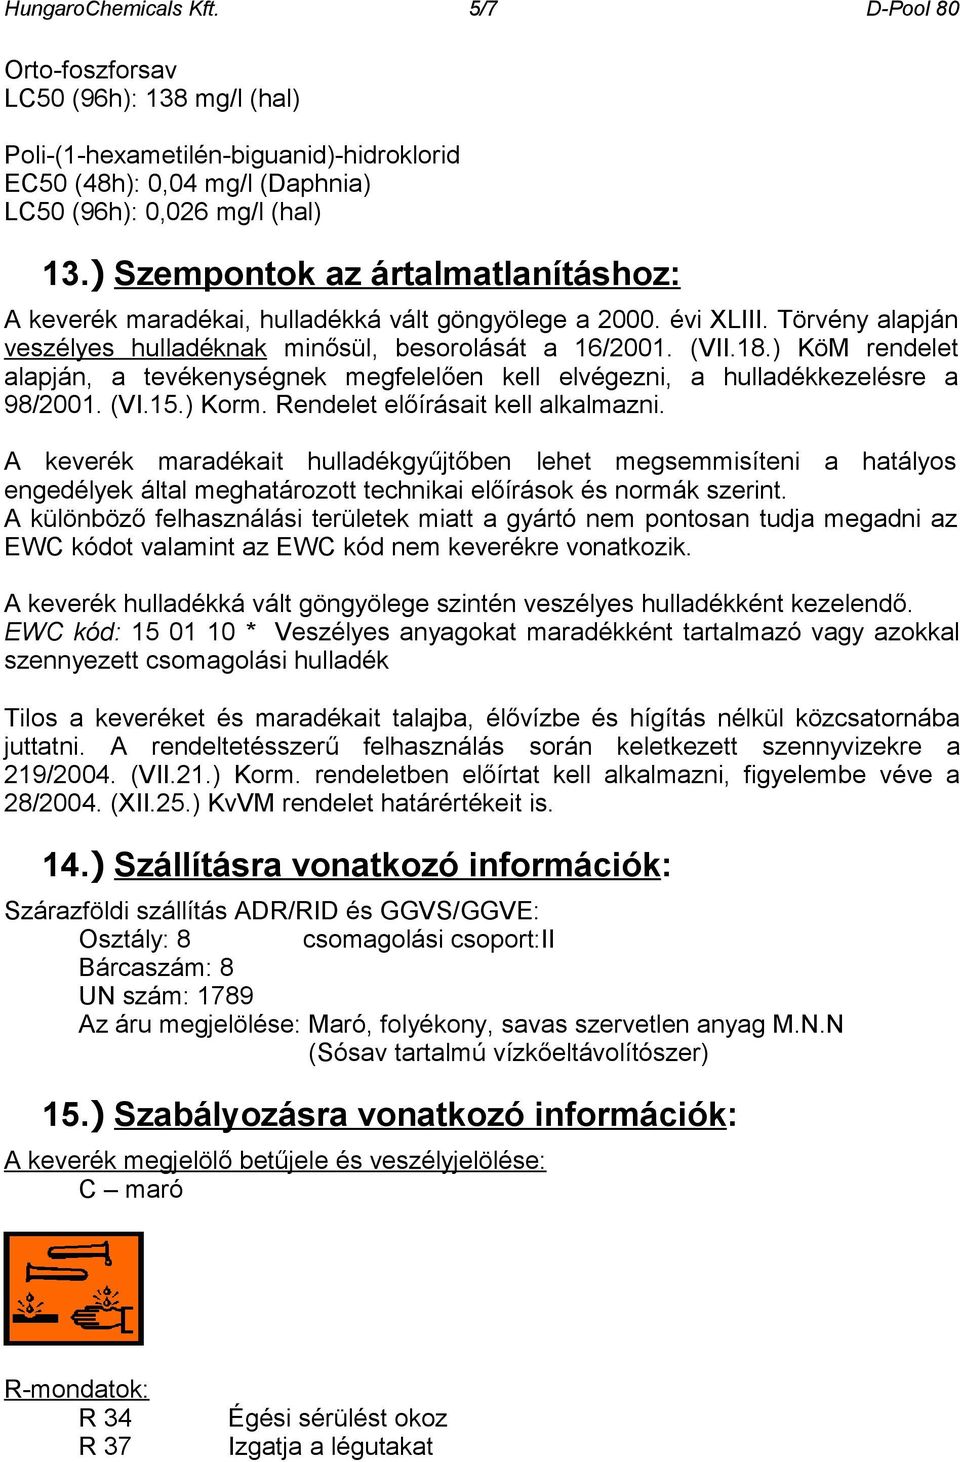 HungaroChemicals Kft. 1/7 D-Pool 80. BIZTONSÁGTECHNIKAI ADATLAP  1907/2006/EK rendelet, REACH. vízkő eltávolítószer - PDF Free Download